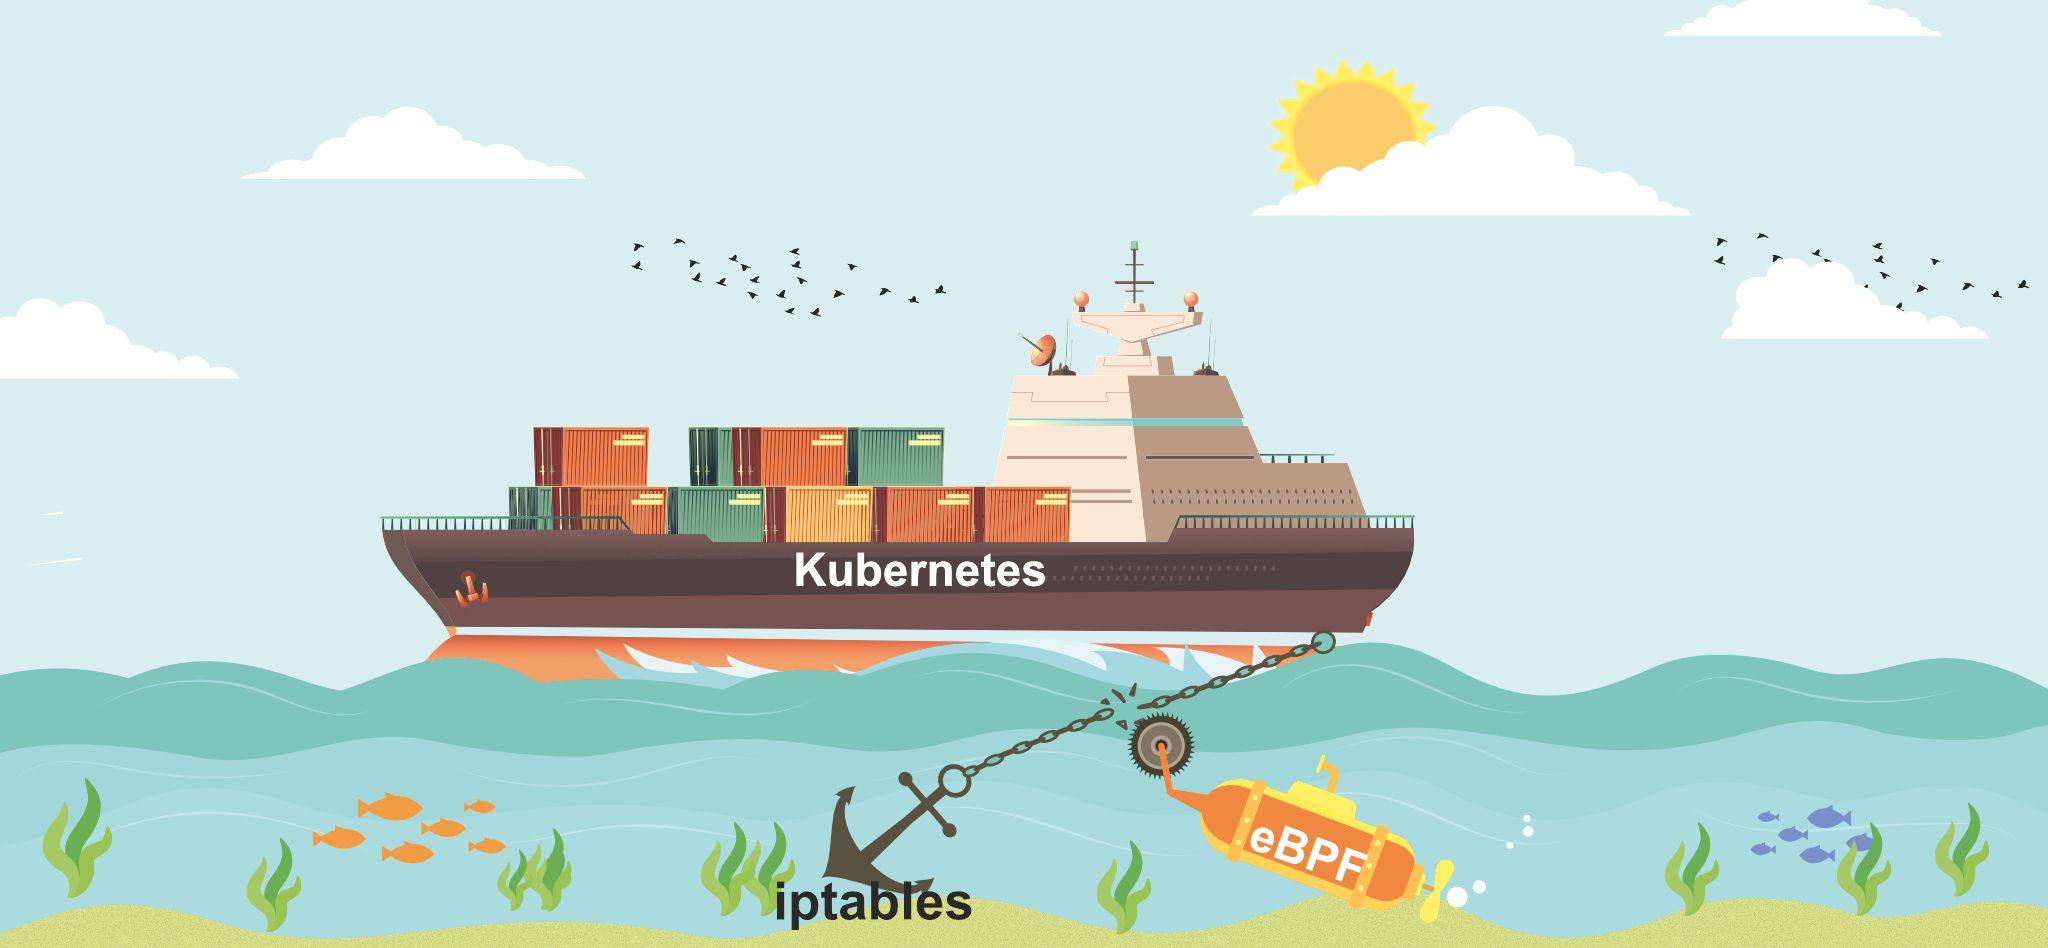 Kubernetes 在物联网应用中的重要性